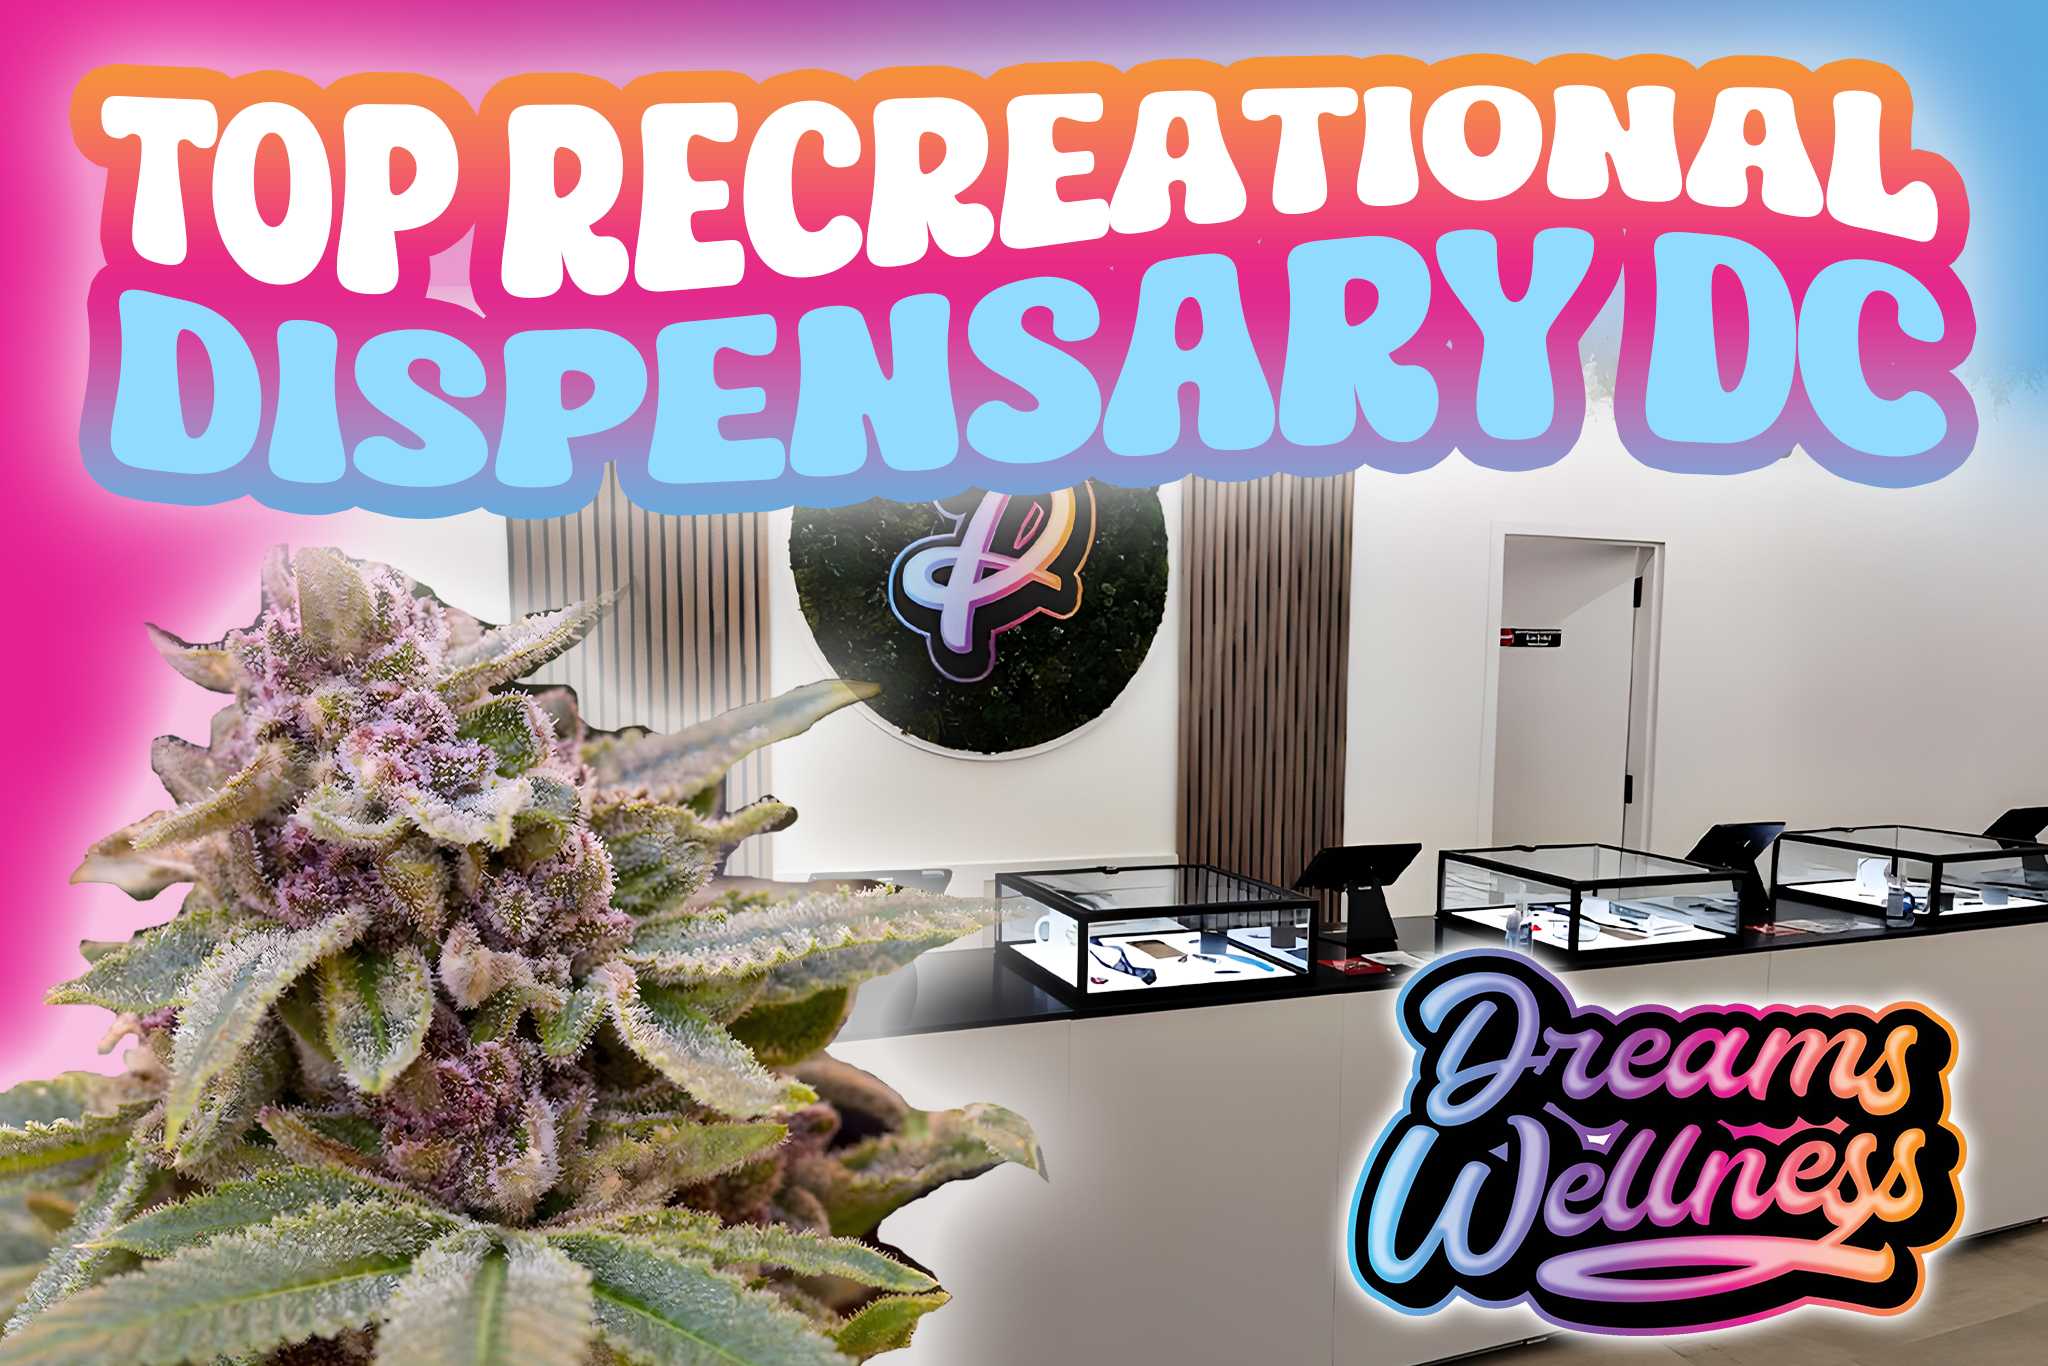 Top Recreational Dispensary DC